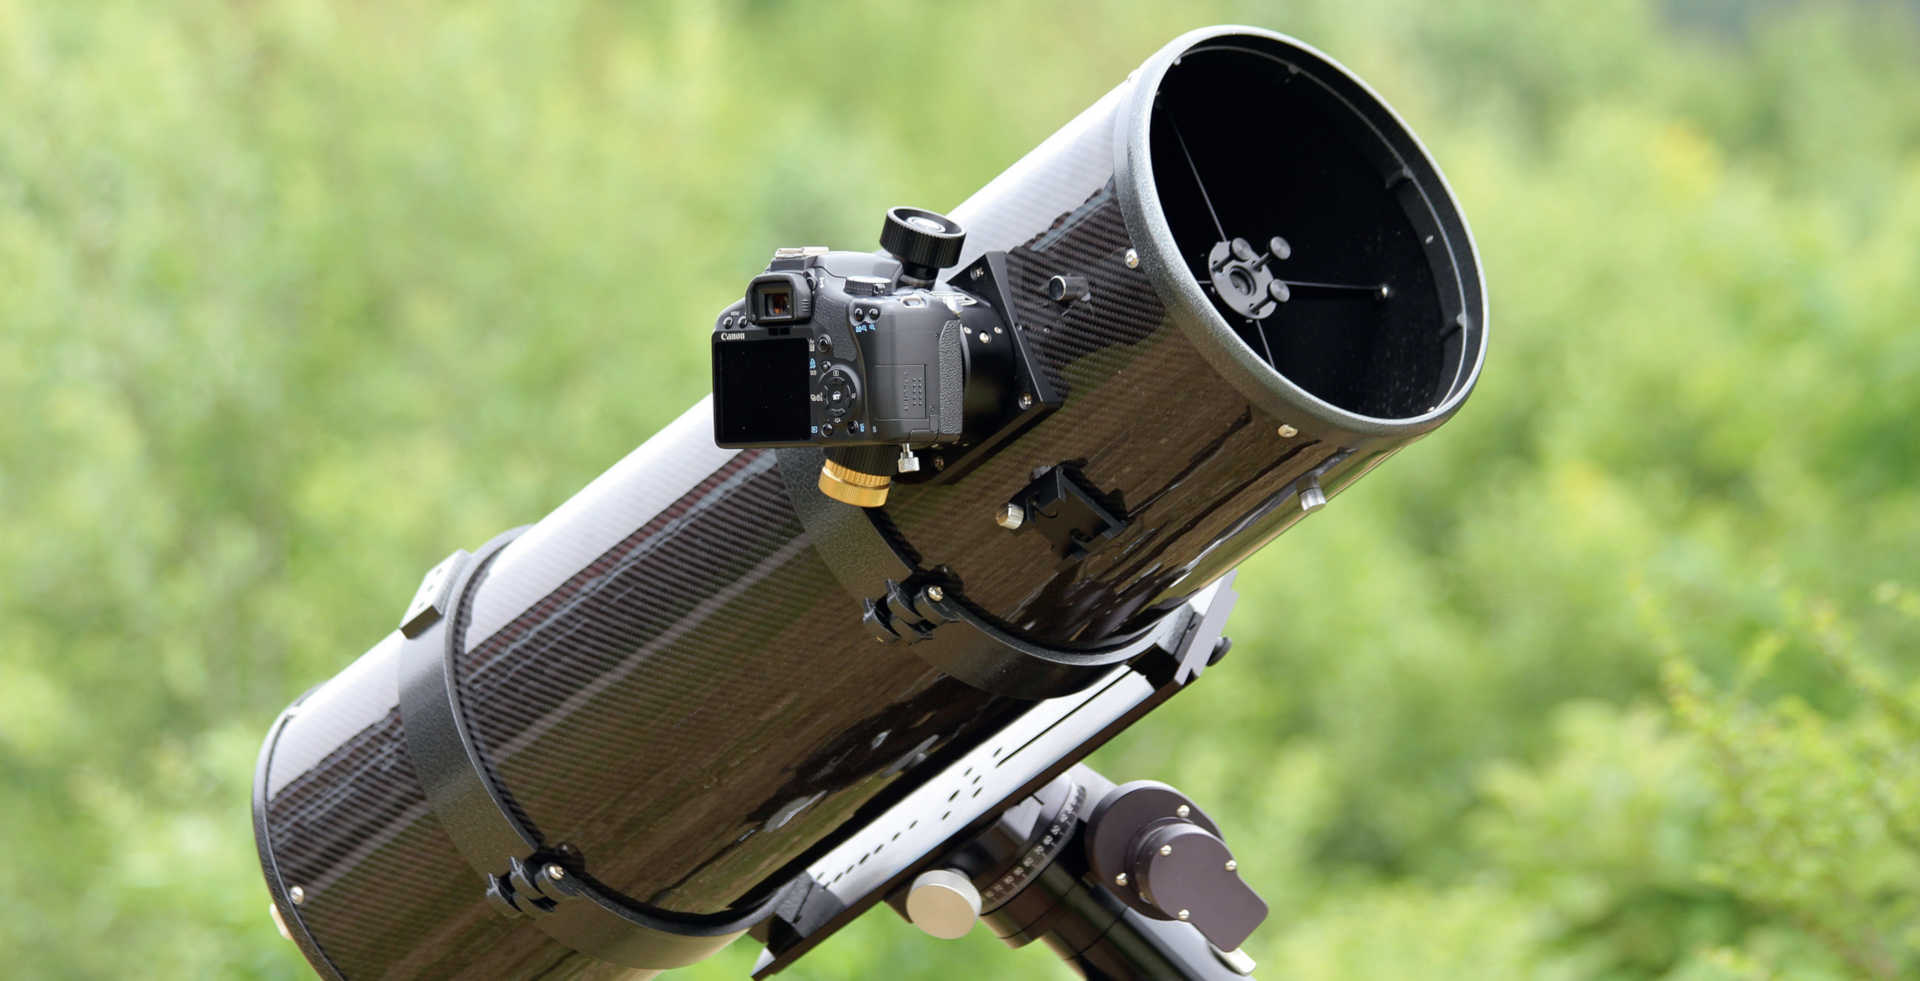 Cu ajutorul unui adaptor pentru camera T2, camerele foto digitale SLR se pot înșuruba direct pe telescop. O altă variantă este prinderea la conexiunea de 2 inch. Pentru a putea urmări în mod fiabil combinația telescop-cameră foto pe durata timpului de expunere lung, este necesară o montură paralactică. U. Dittler